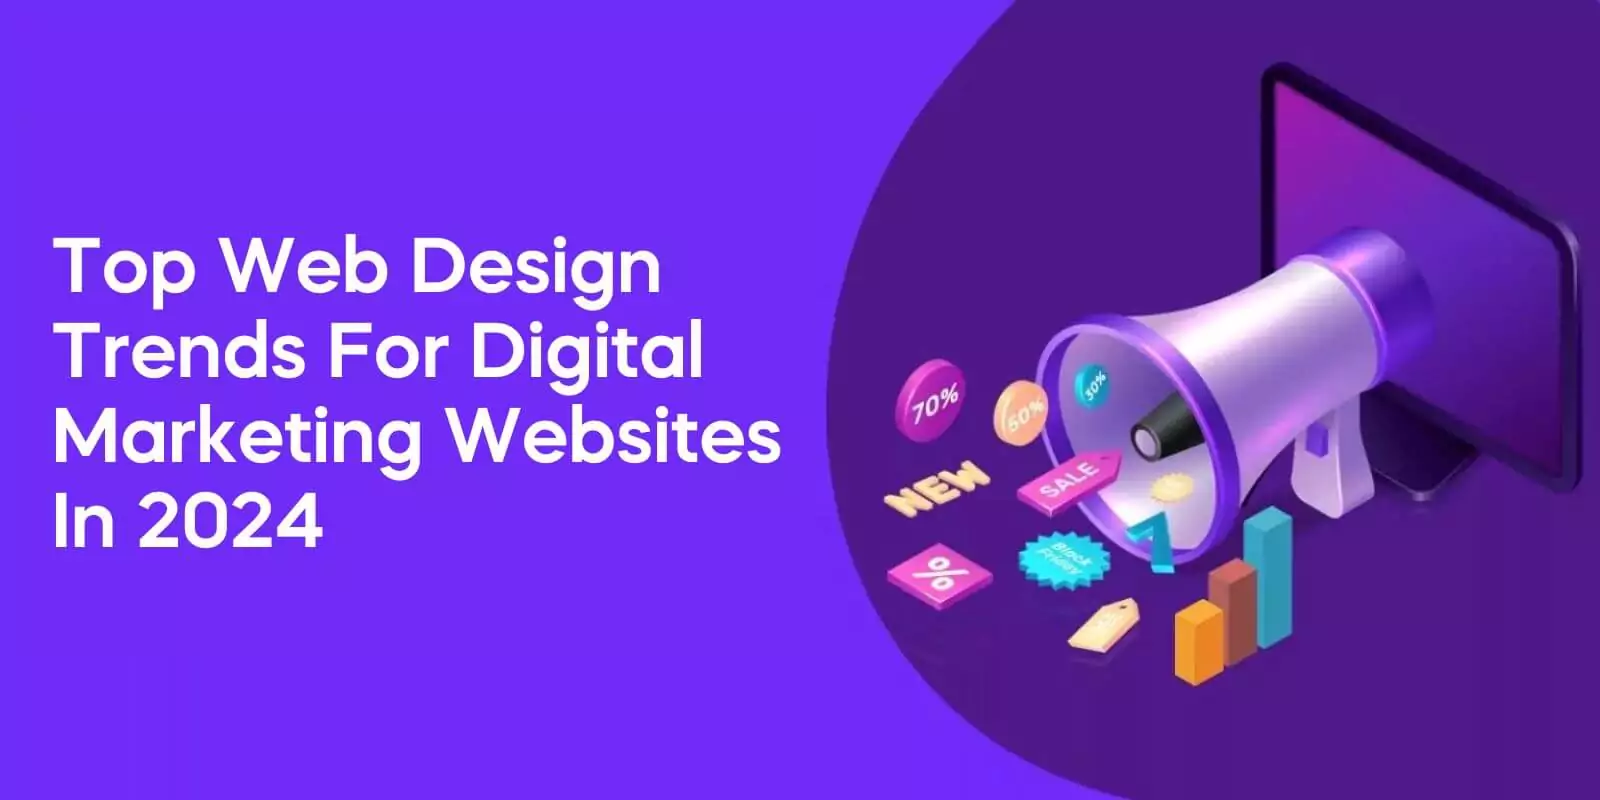 Top Web Design Trends for Digital Marketing Websites in 2024